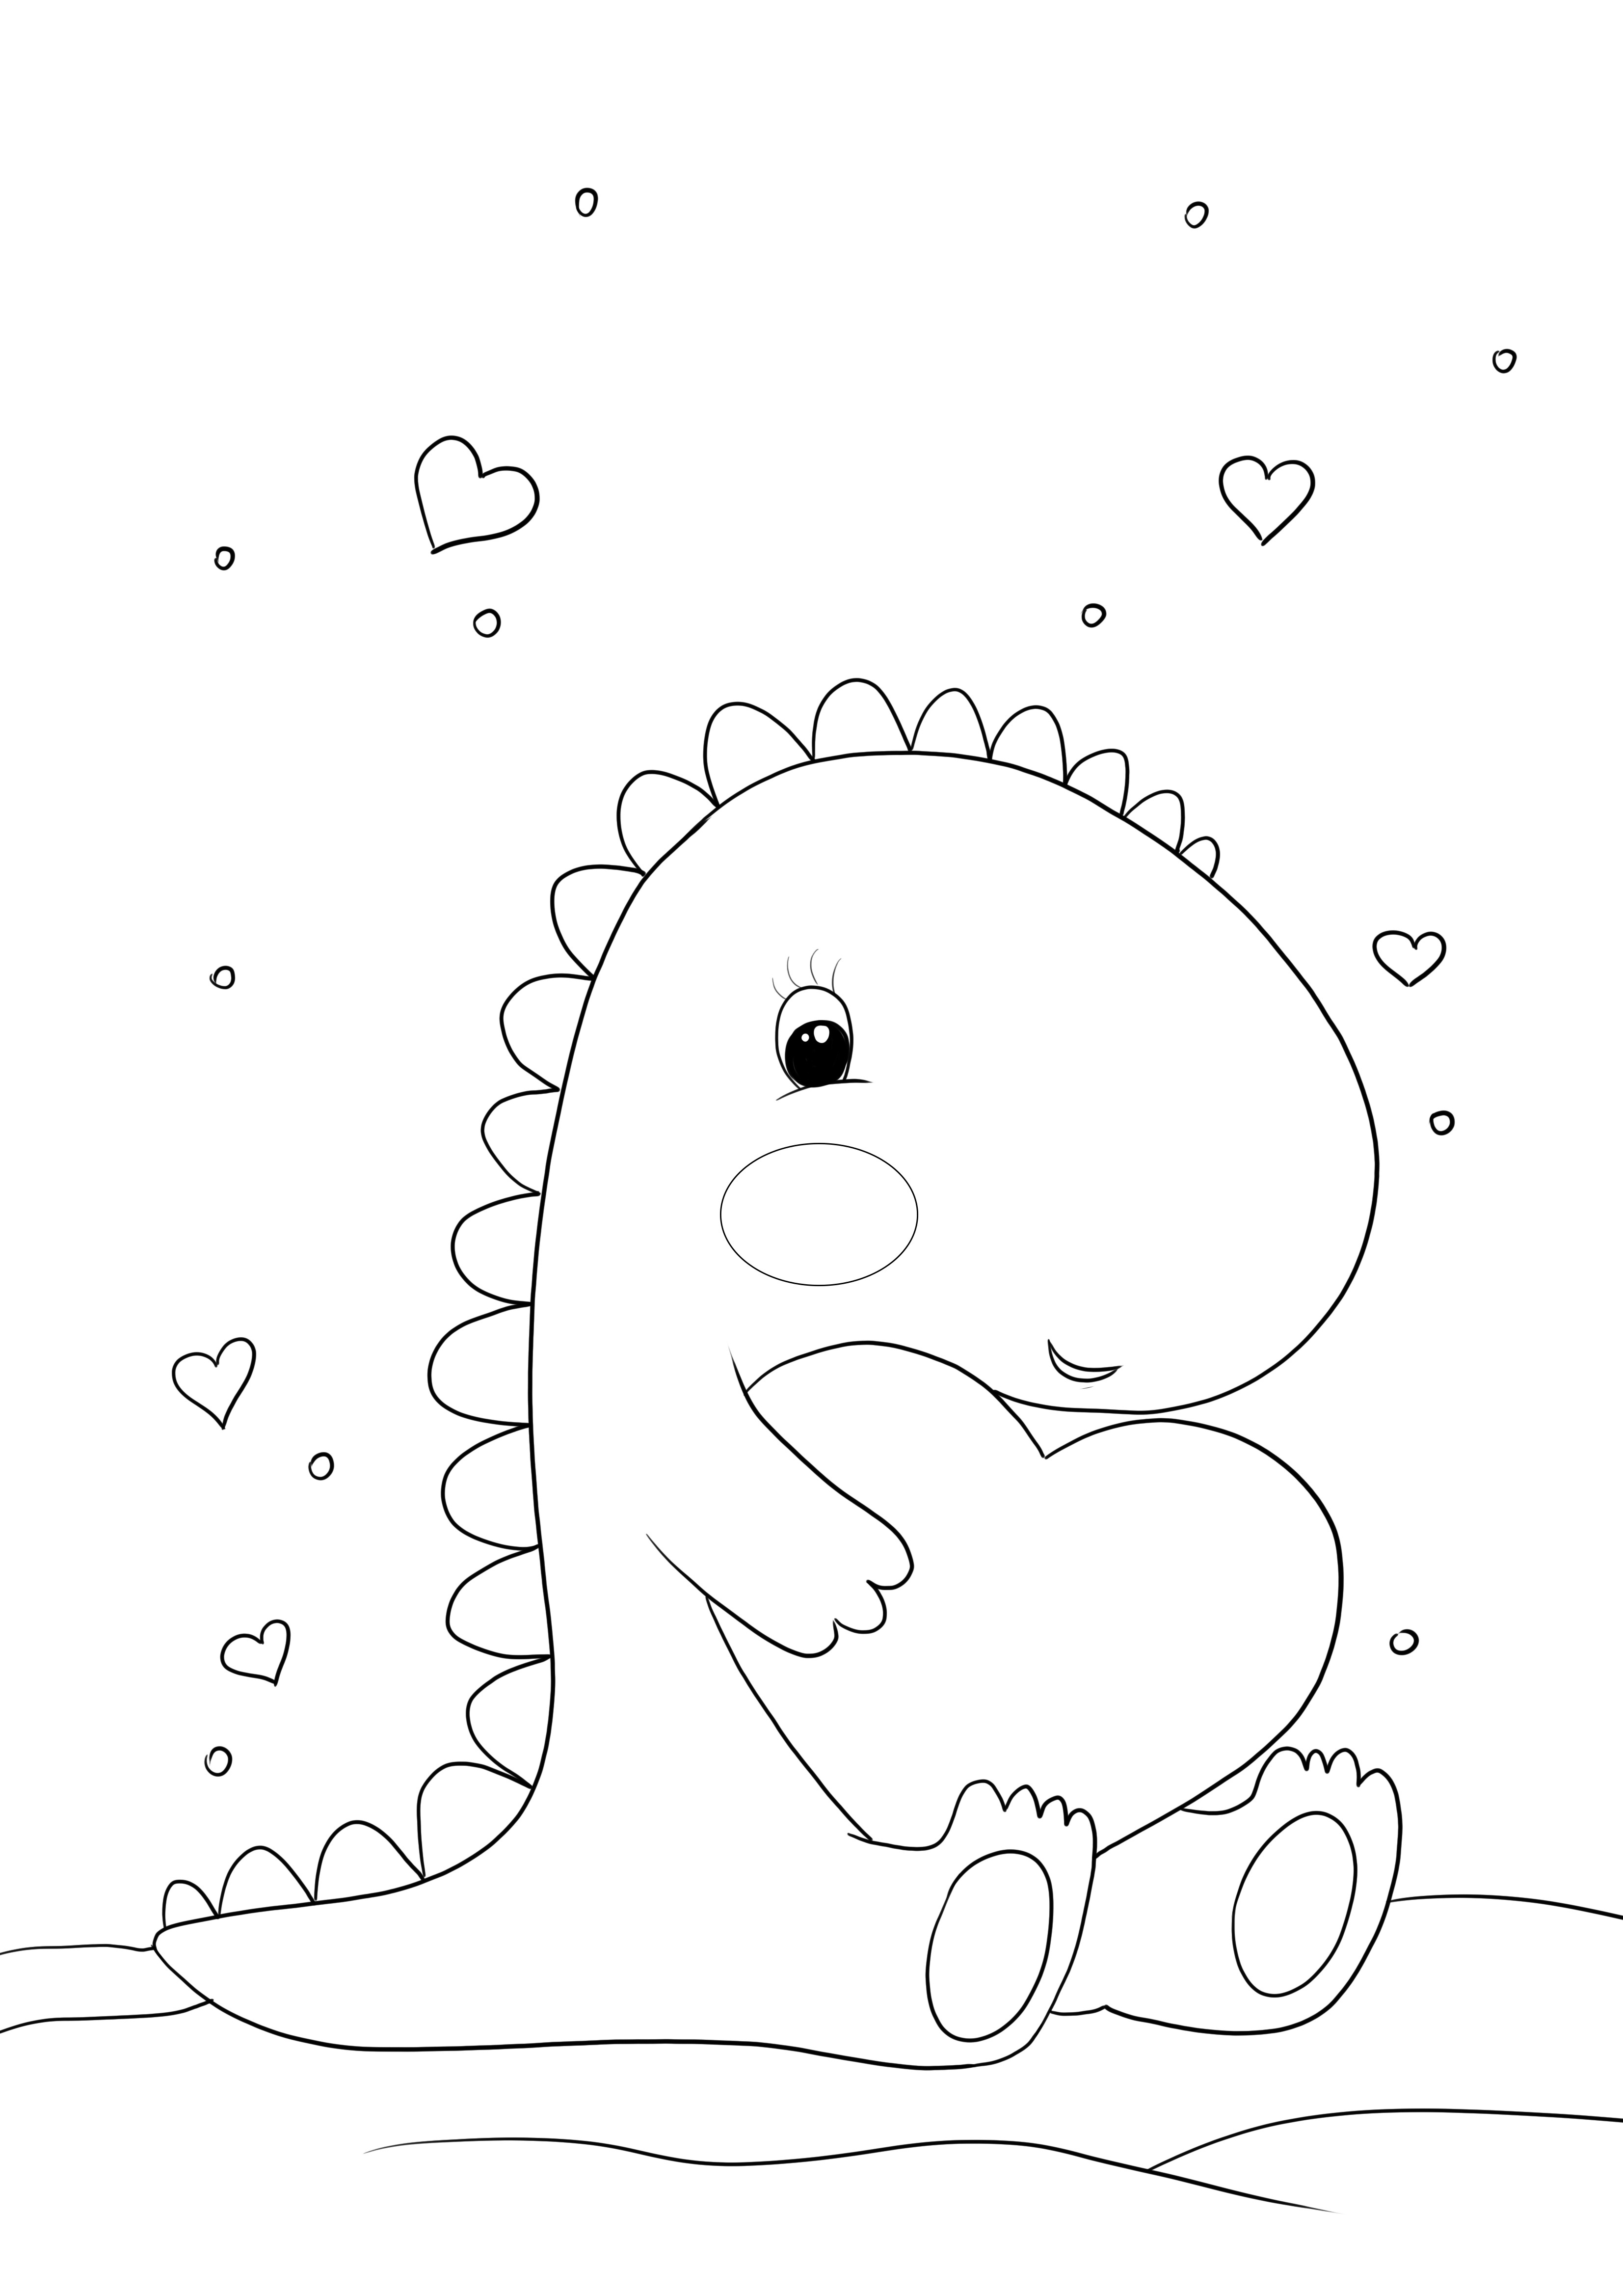 Çocuklar için ücretsiz yazdırılacak ve renklendirilecek bir kalbi olan Kawaii dinozor sayfası